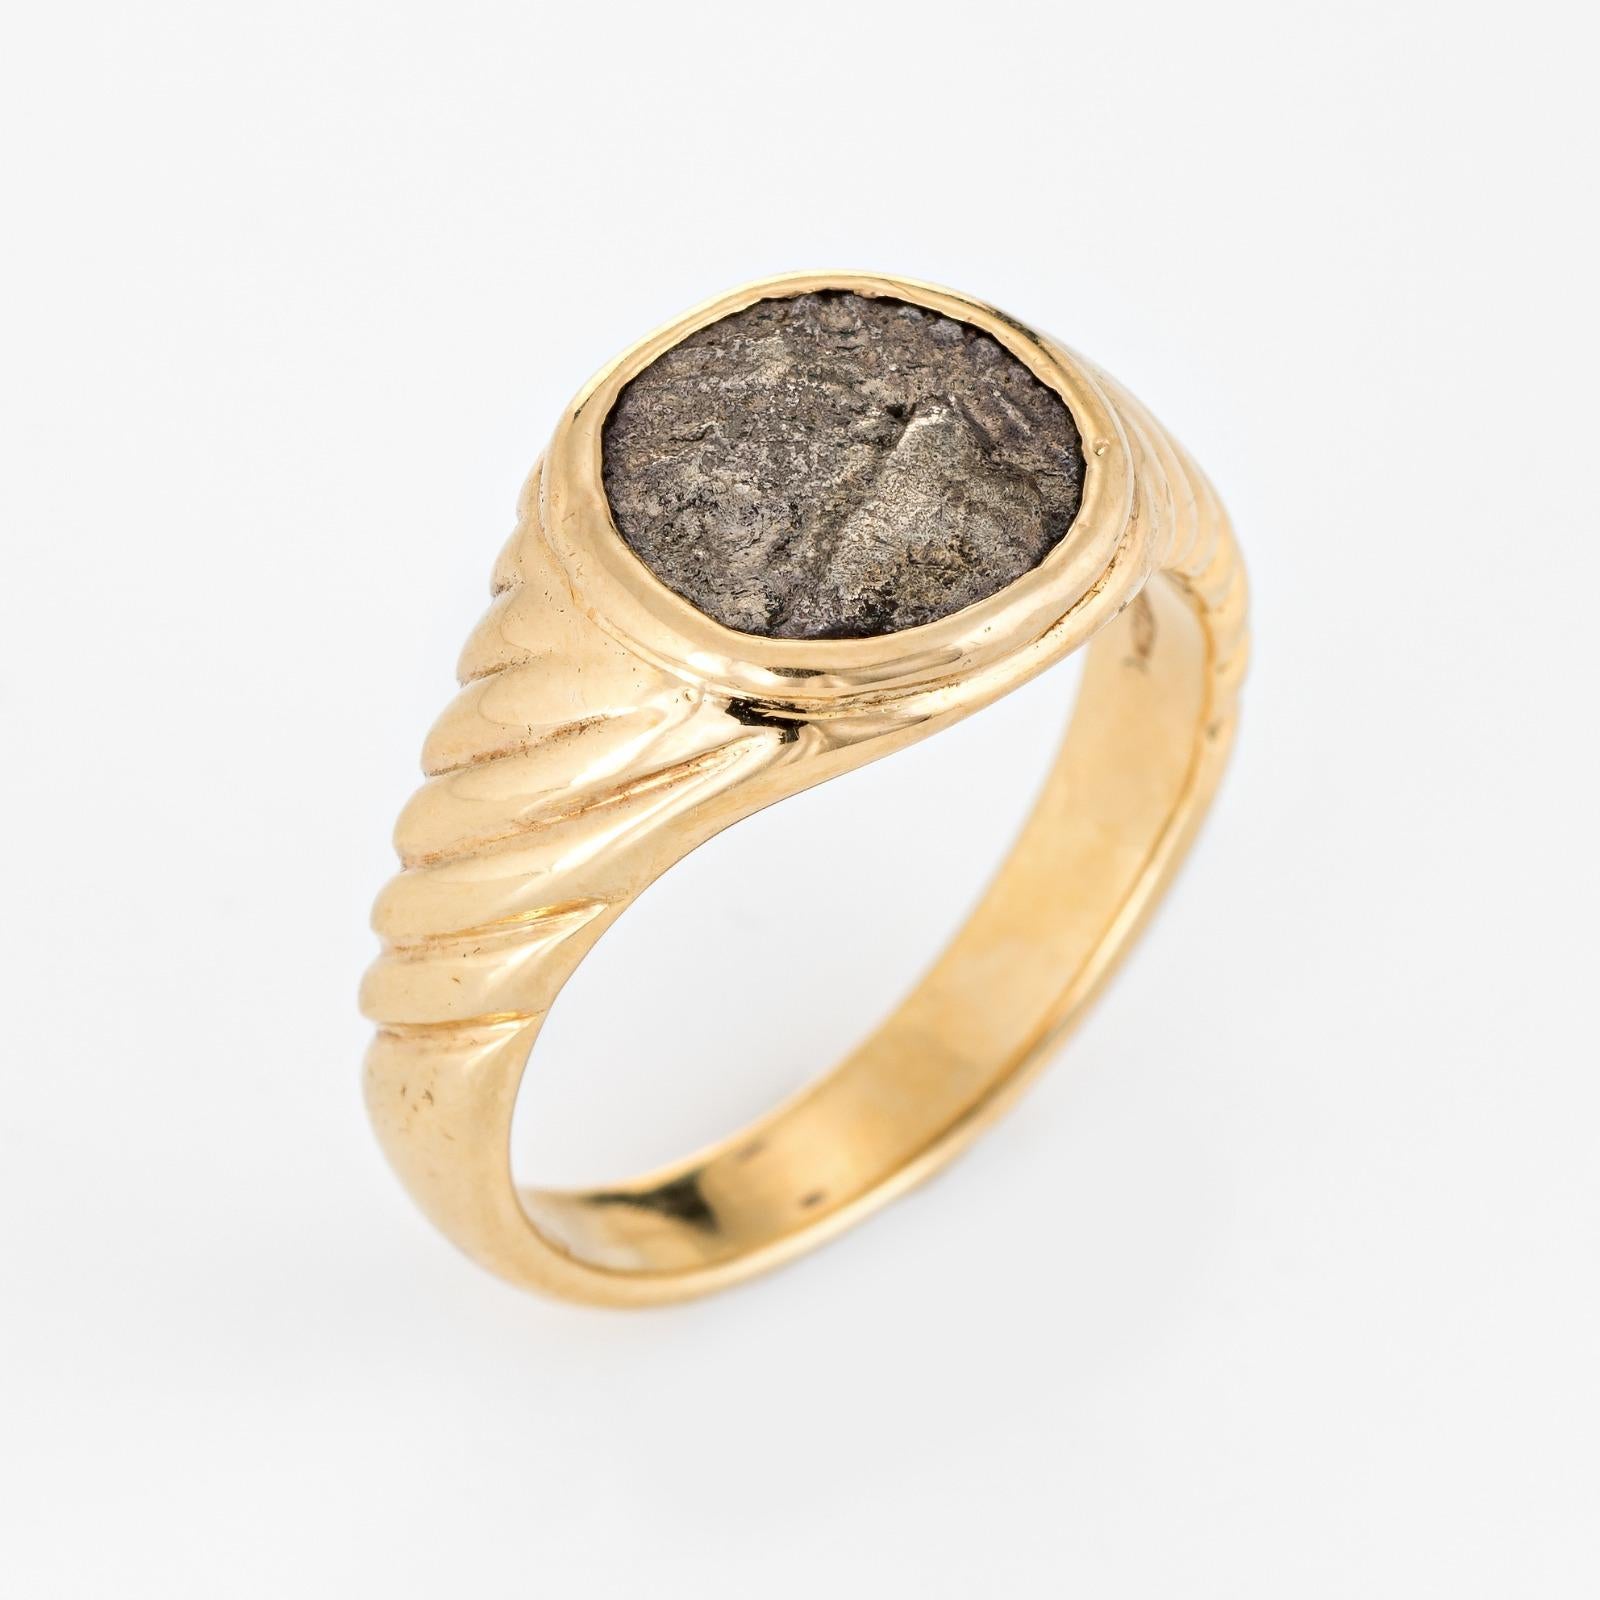 Stilvoller Bulgari-Ring mit antiken Münzen aus 18 Karat Gelbgold (ca. 1970er bis 1980er Jahre).

Der ikonische Münzring wurde bereits in den 1960er Jahren von Bulgari kreiert. Das unvergängliche 'Monet'-Design erfreut sich bis heute großer